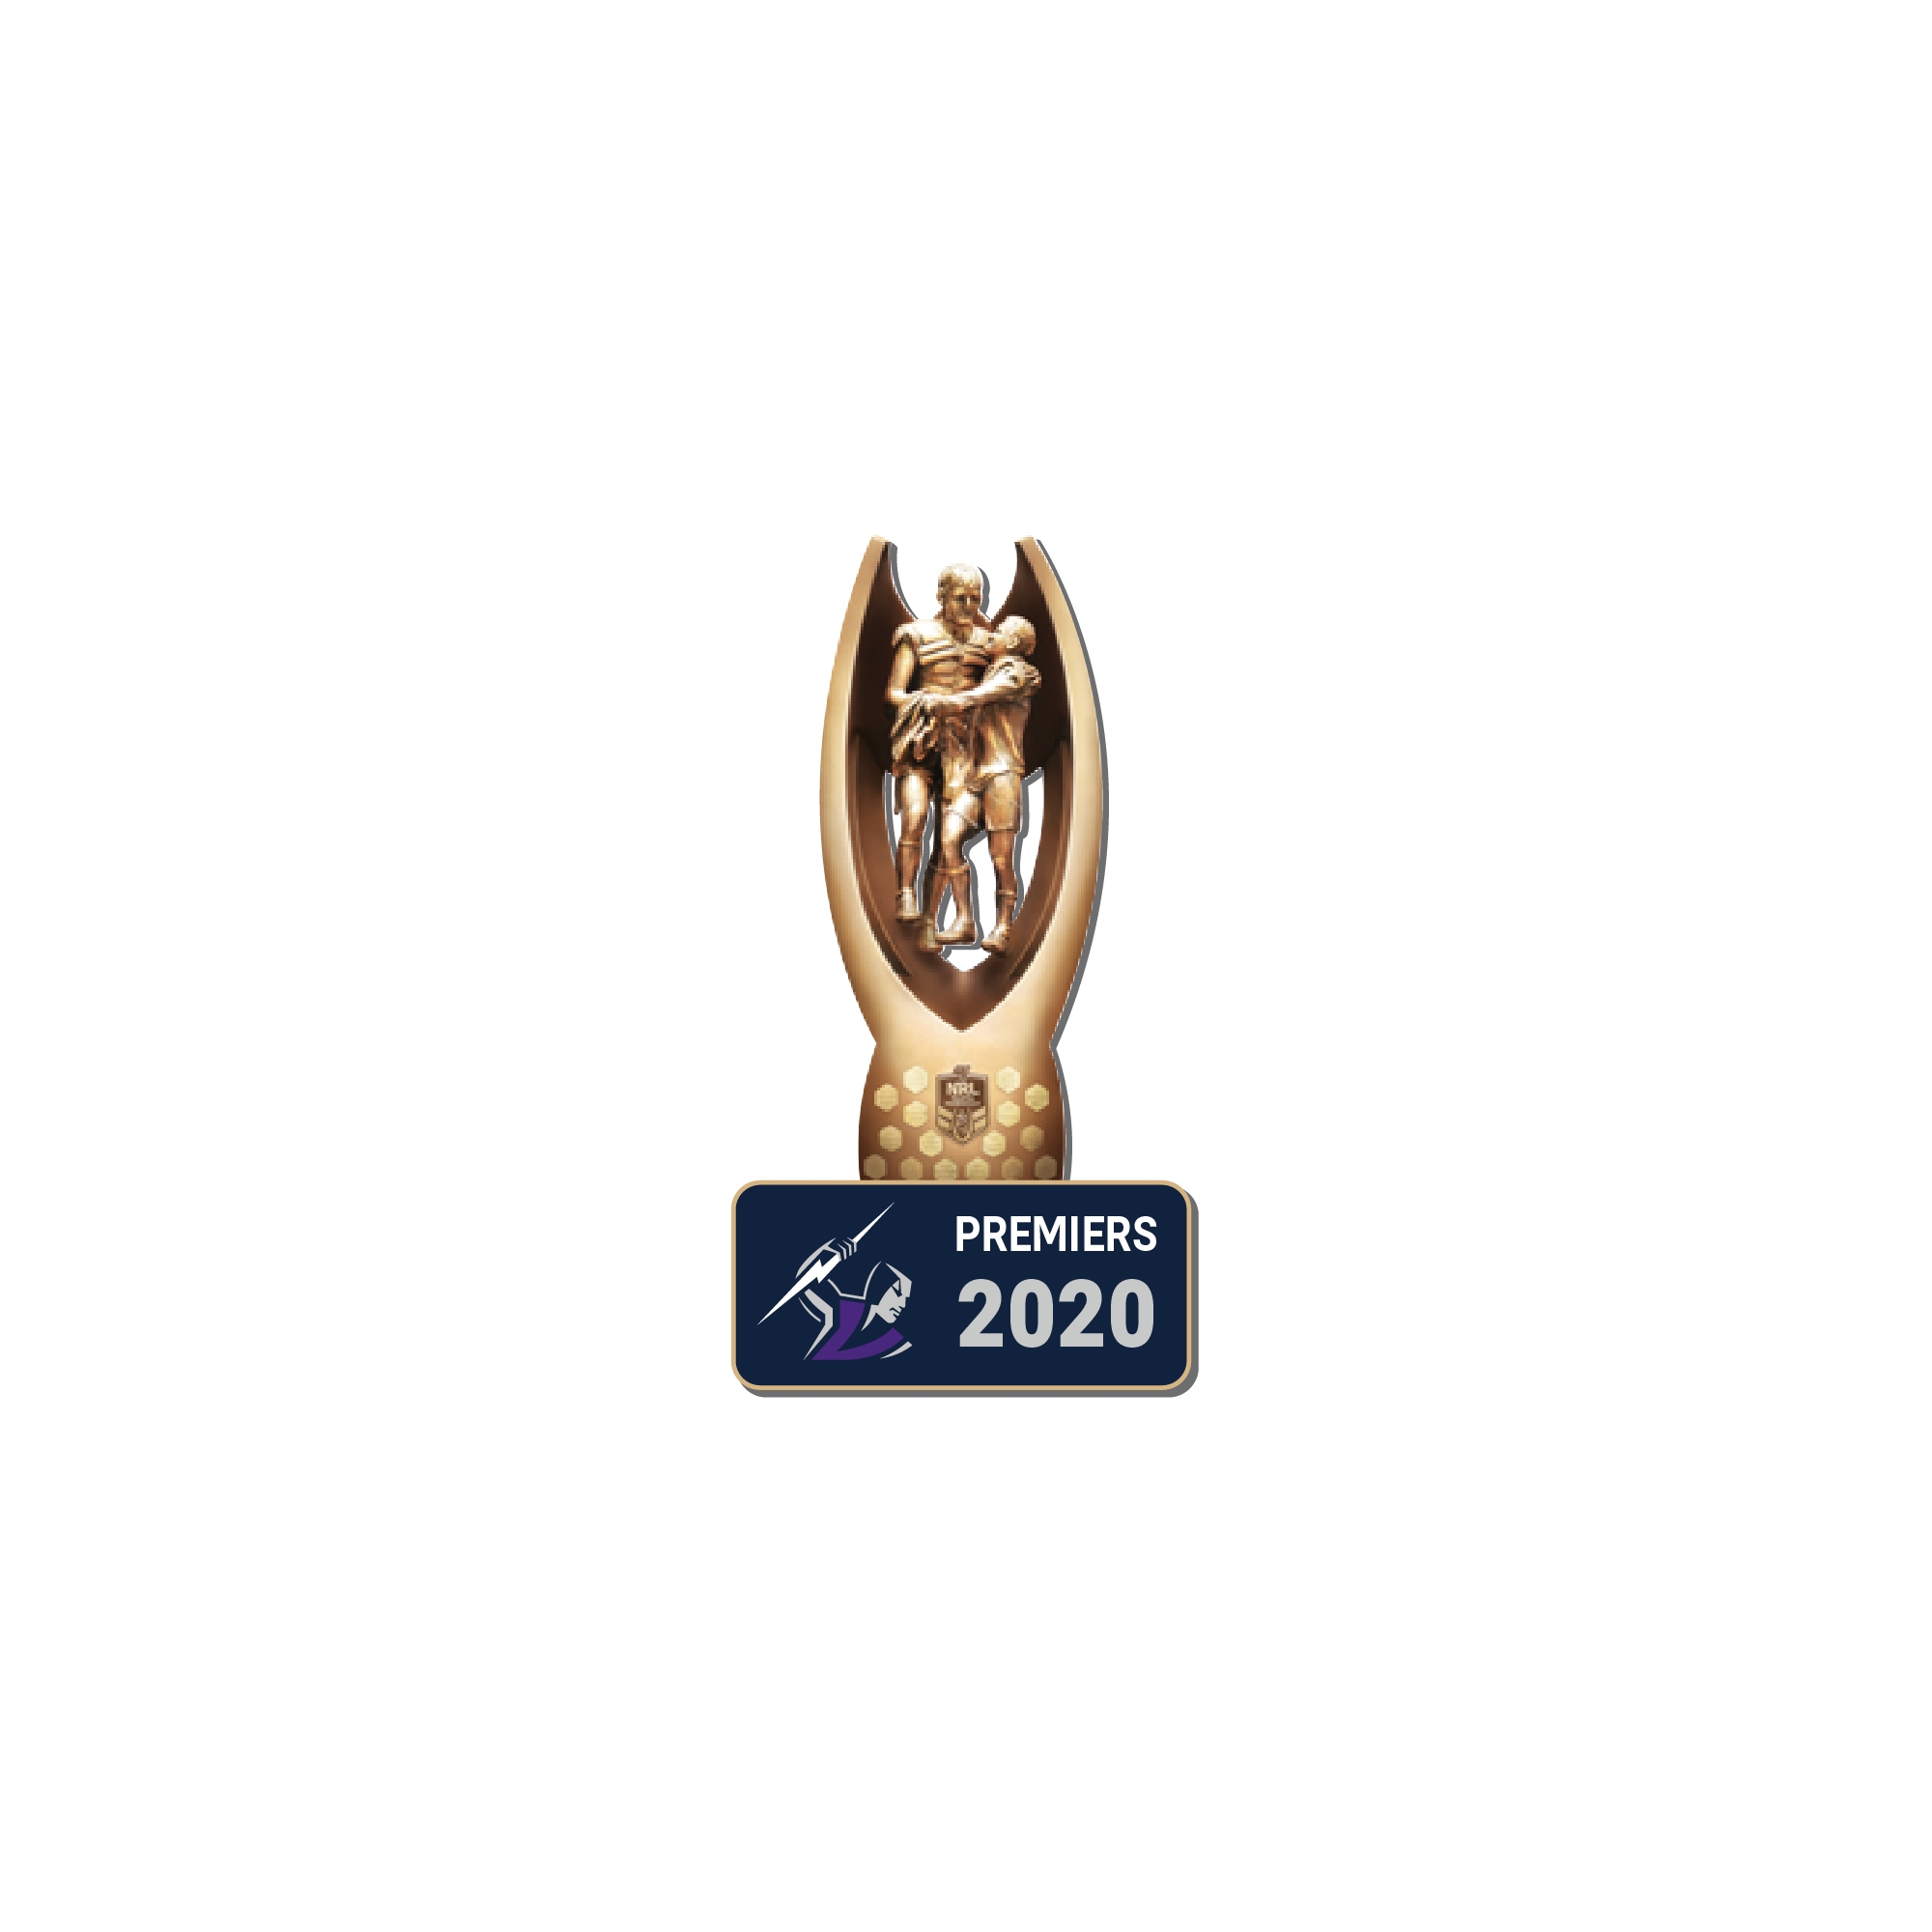 Storm Premiers Trophy Pin